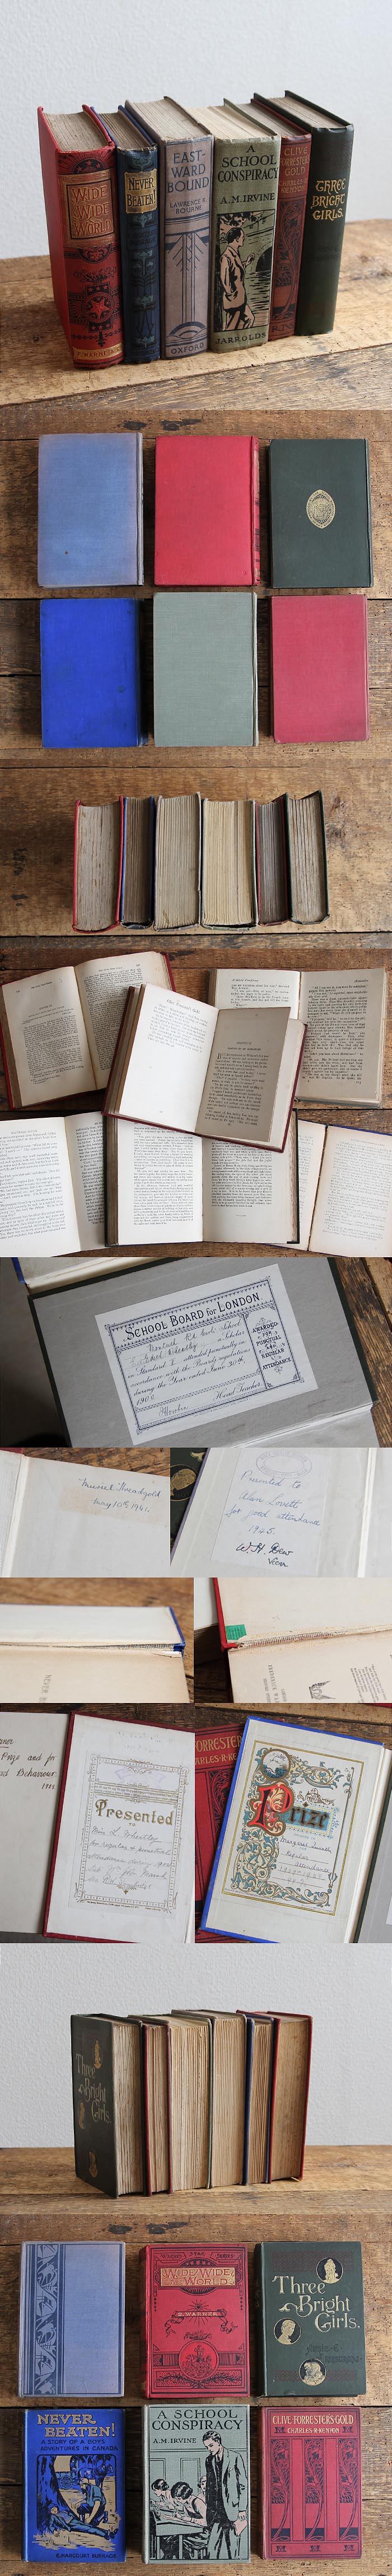 イギリス アンティークブック 6冊セット 古本 インテリア雑貨 ディスプレイ「雰囲気パーフェクト」V-498